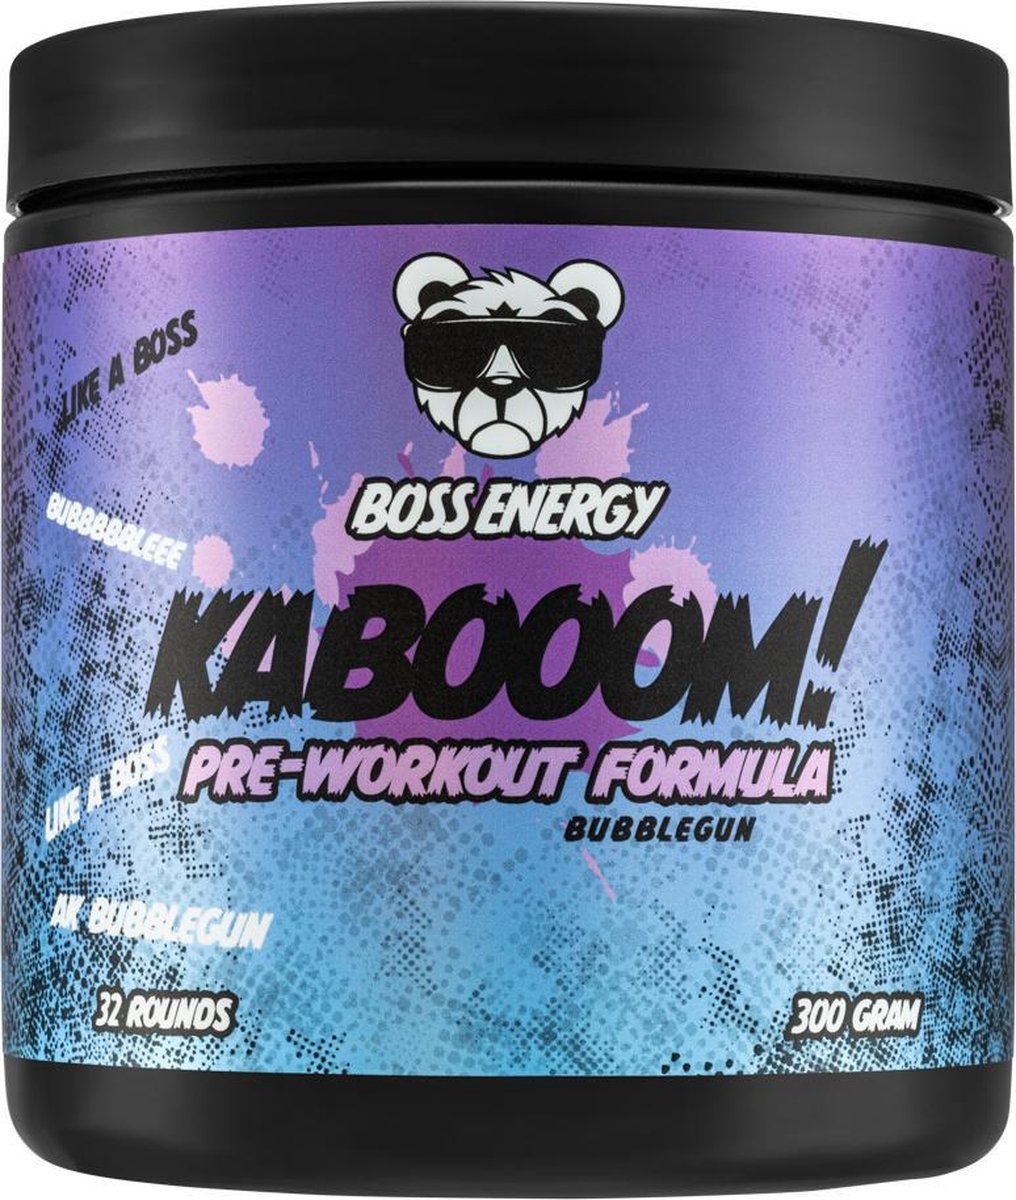 Boss Energy - preworkout - Kabooom! Preworkout - Bubblegun